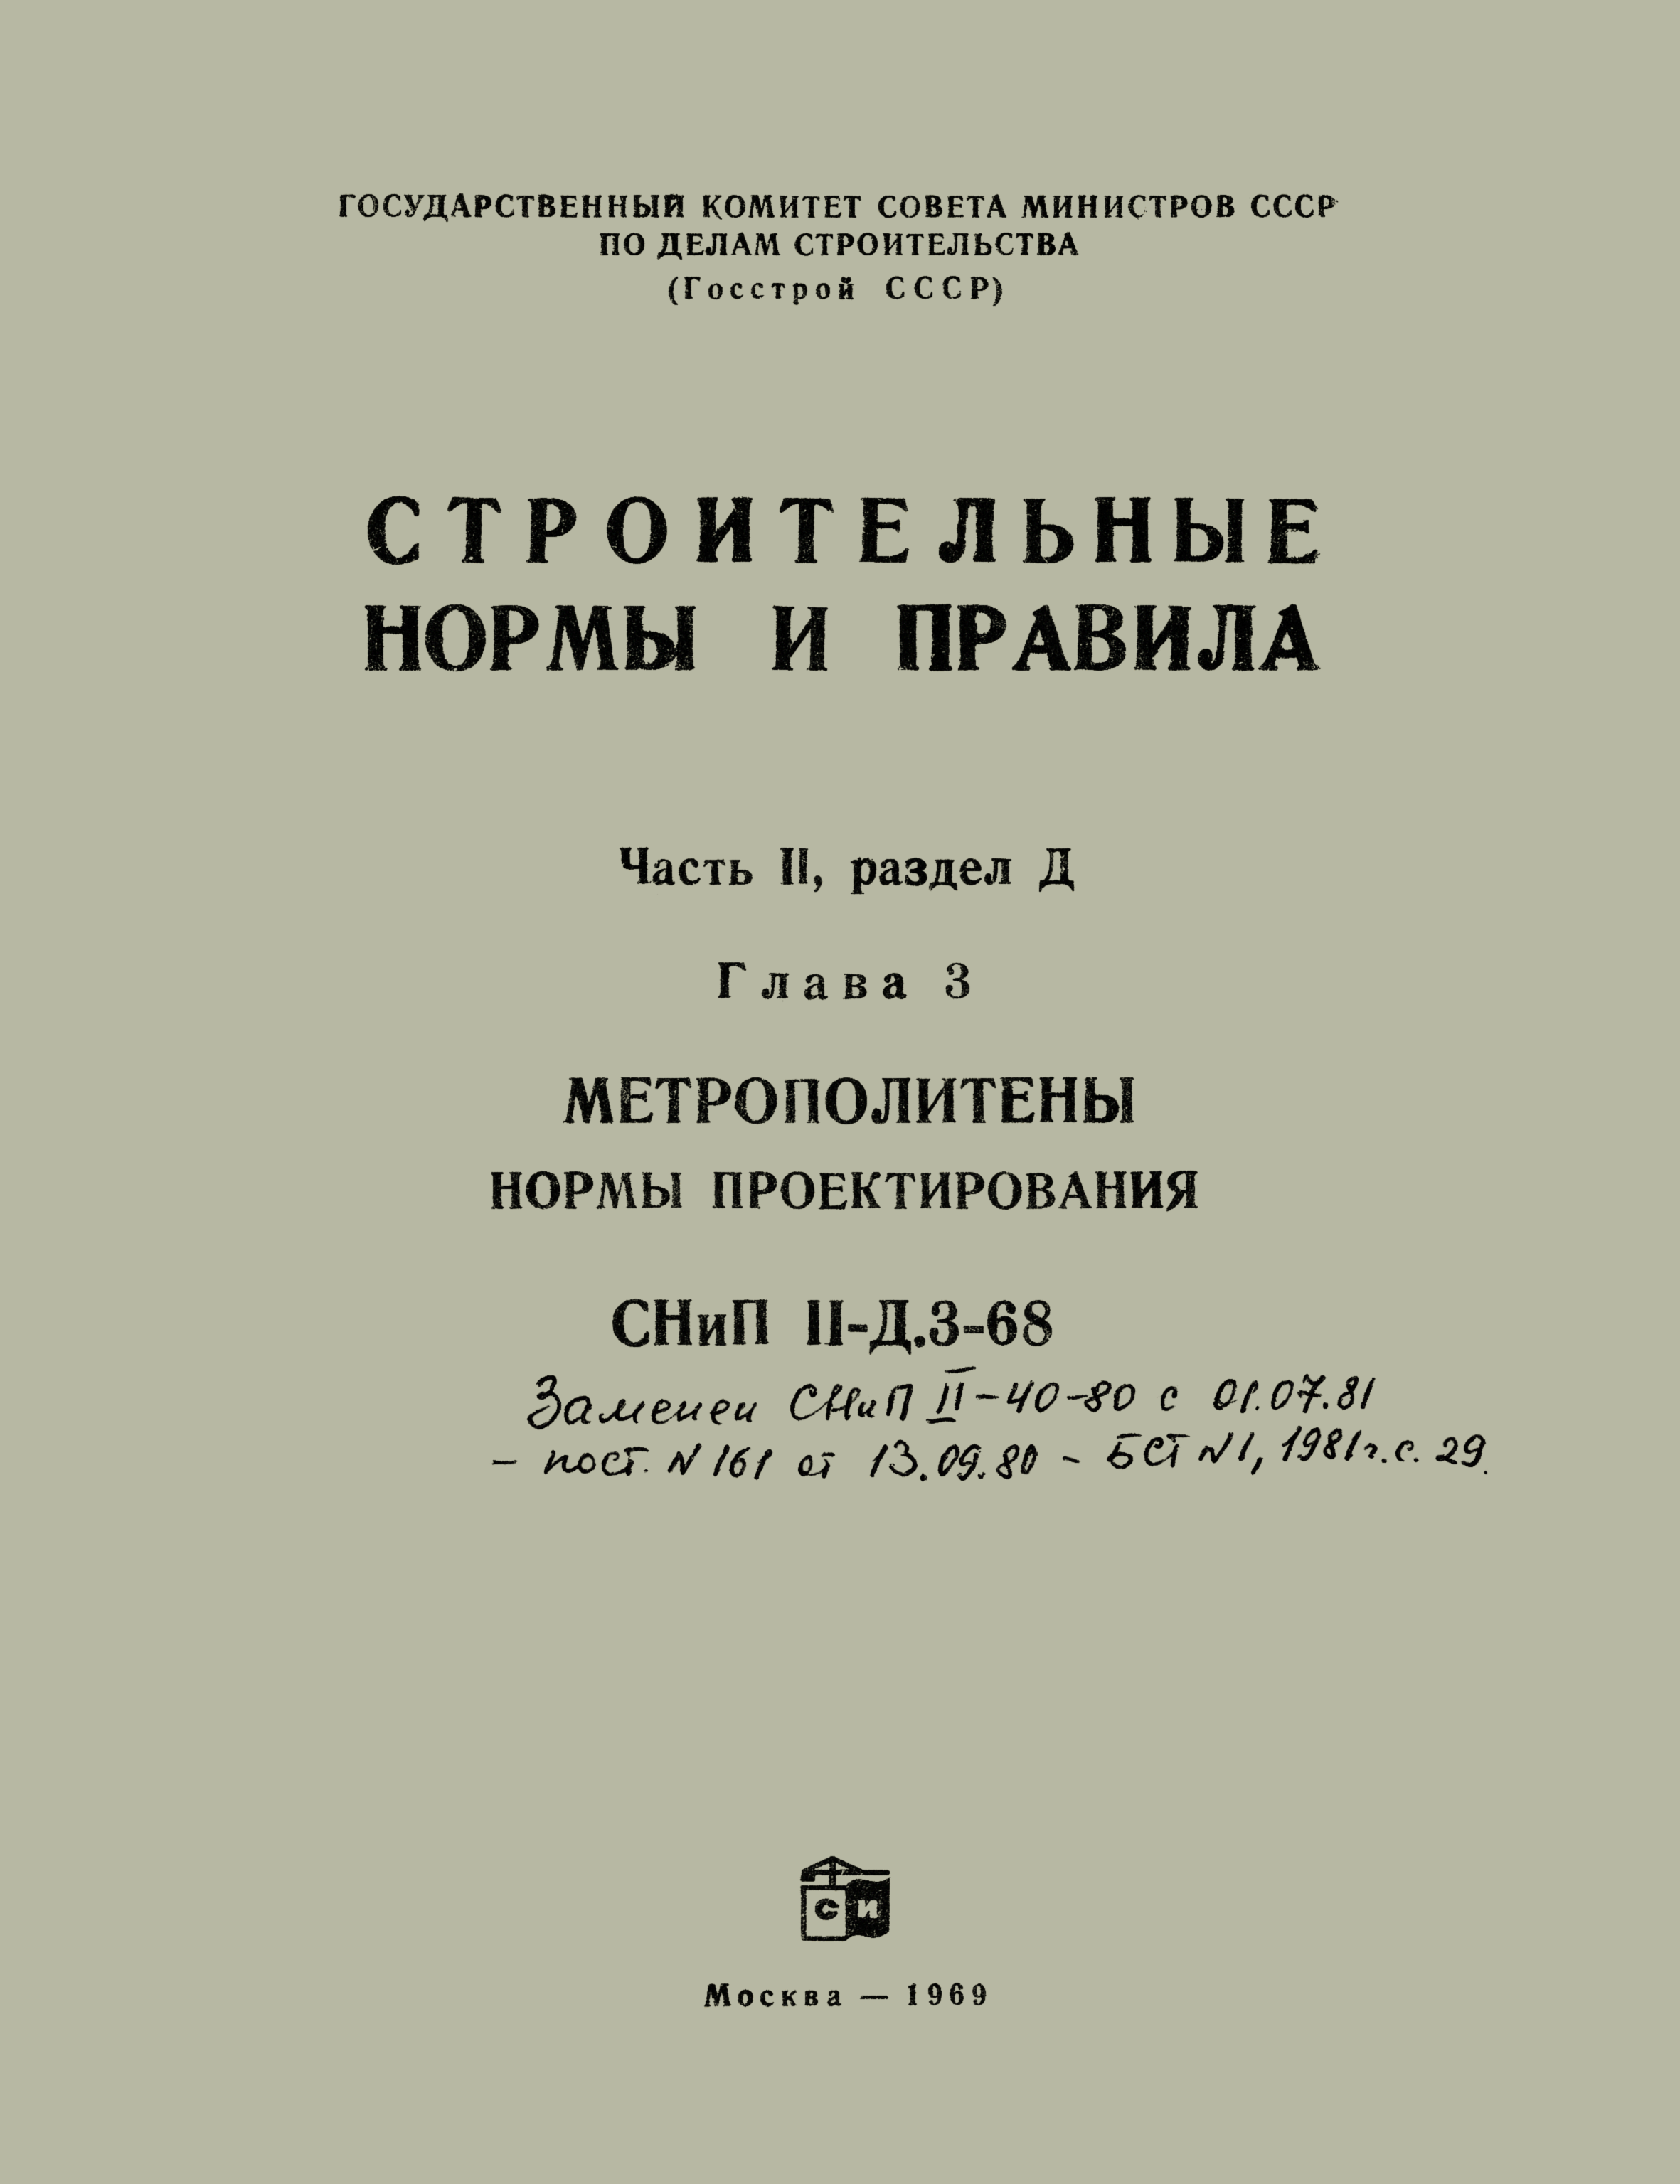 СНиП II-Д.3-68